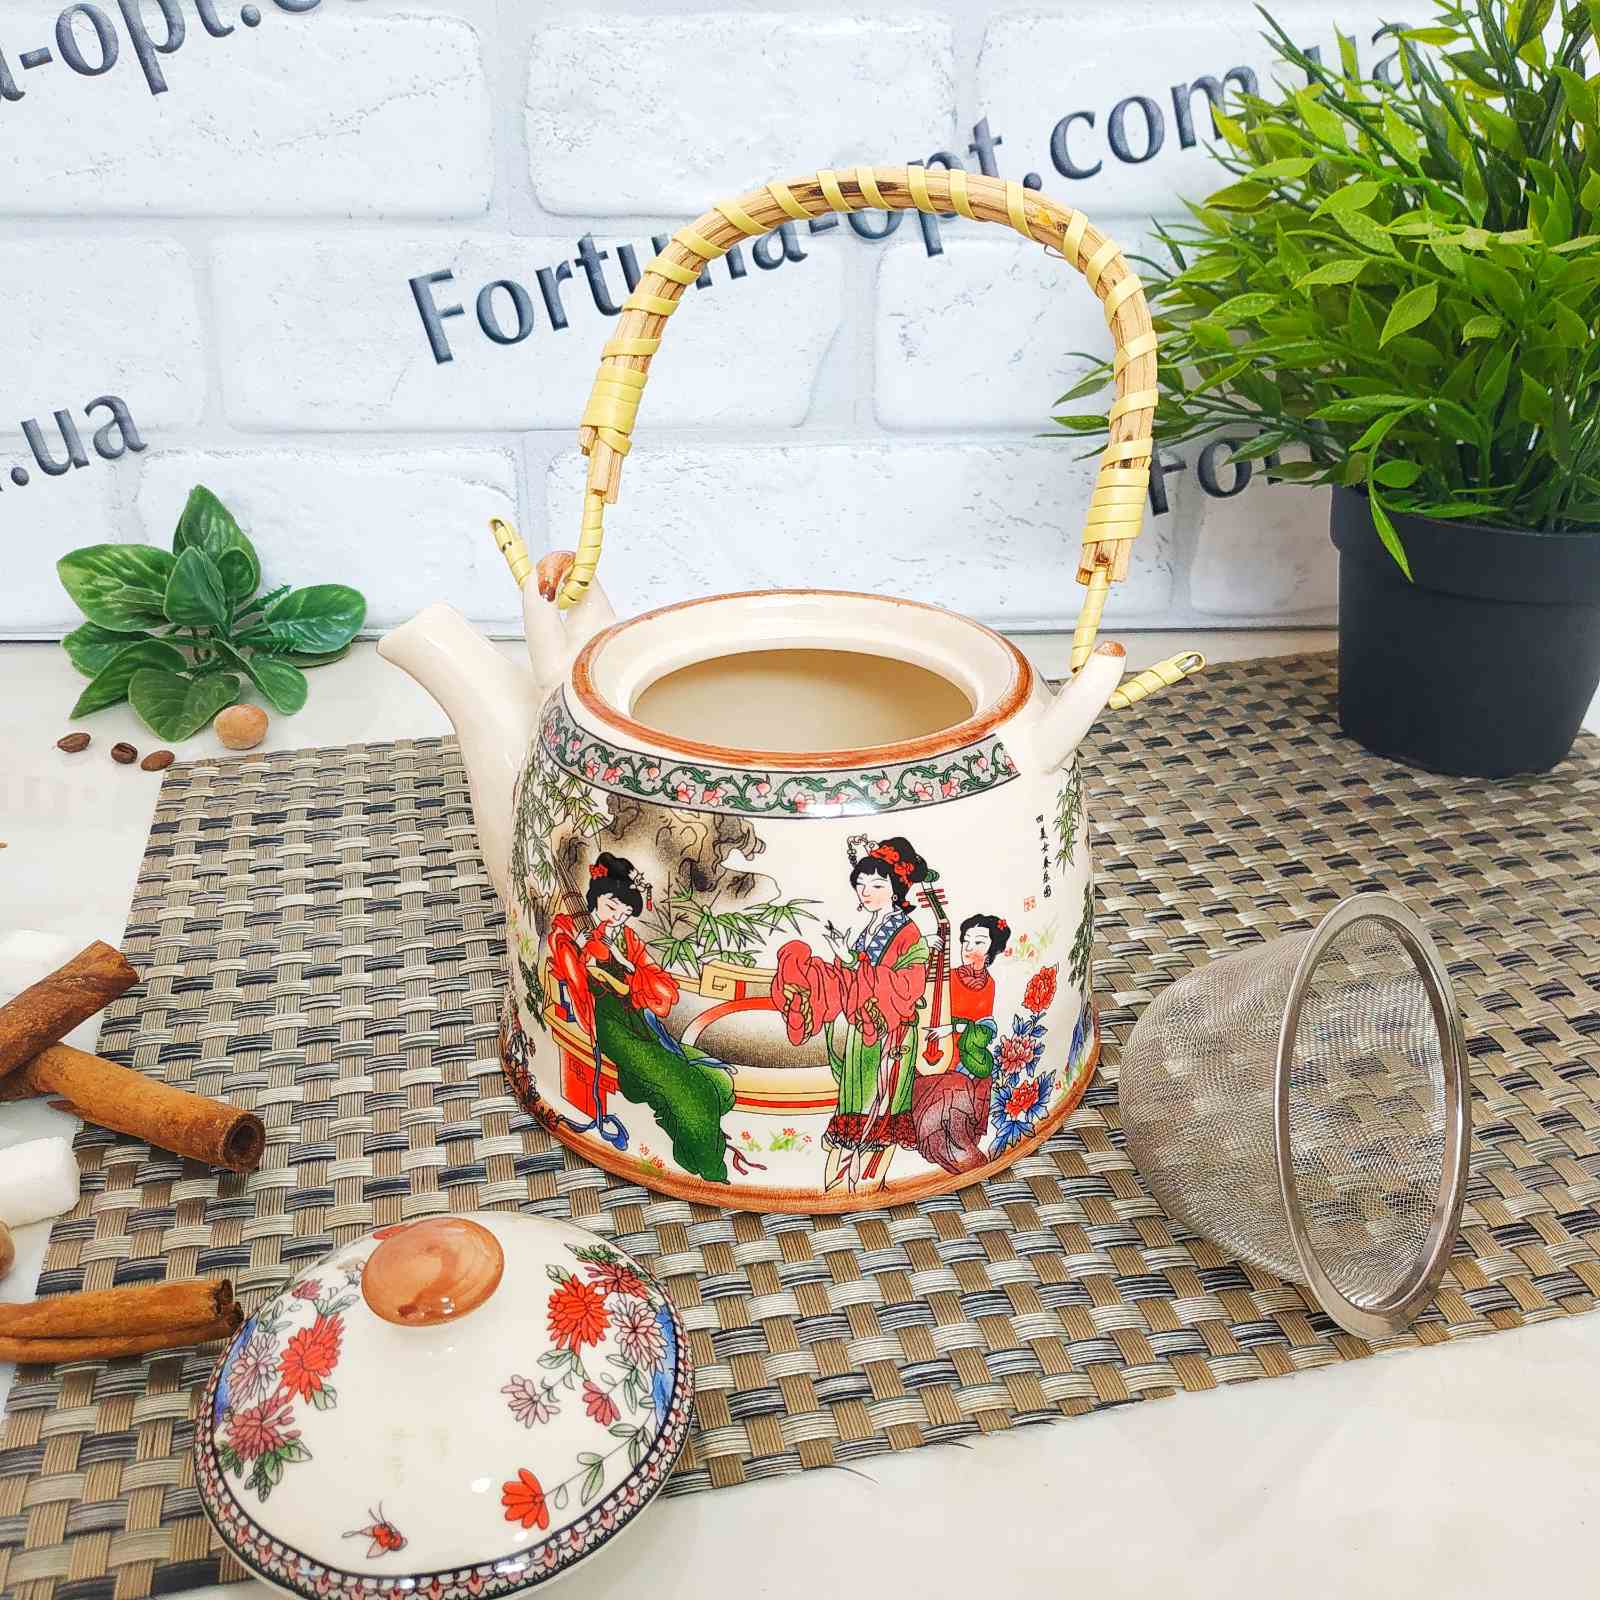 Заварочный чайник в китайском стиле (керамика) Edenberg EB - 3362 ✅ базовая цена $6.14 ✔ Опт ✔ Скидки ✔ Заходите! - Интернет-магазин ✅ ;Фортуна-опт ✅